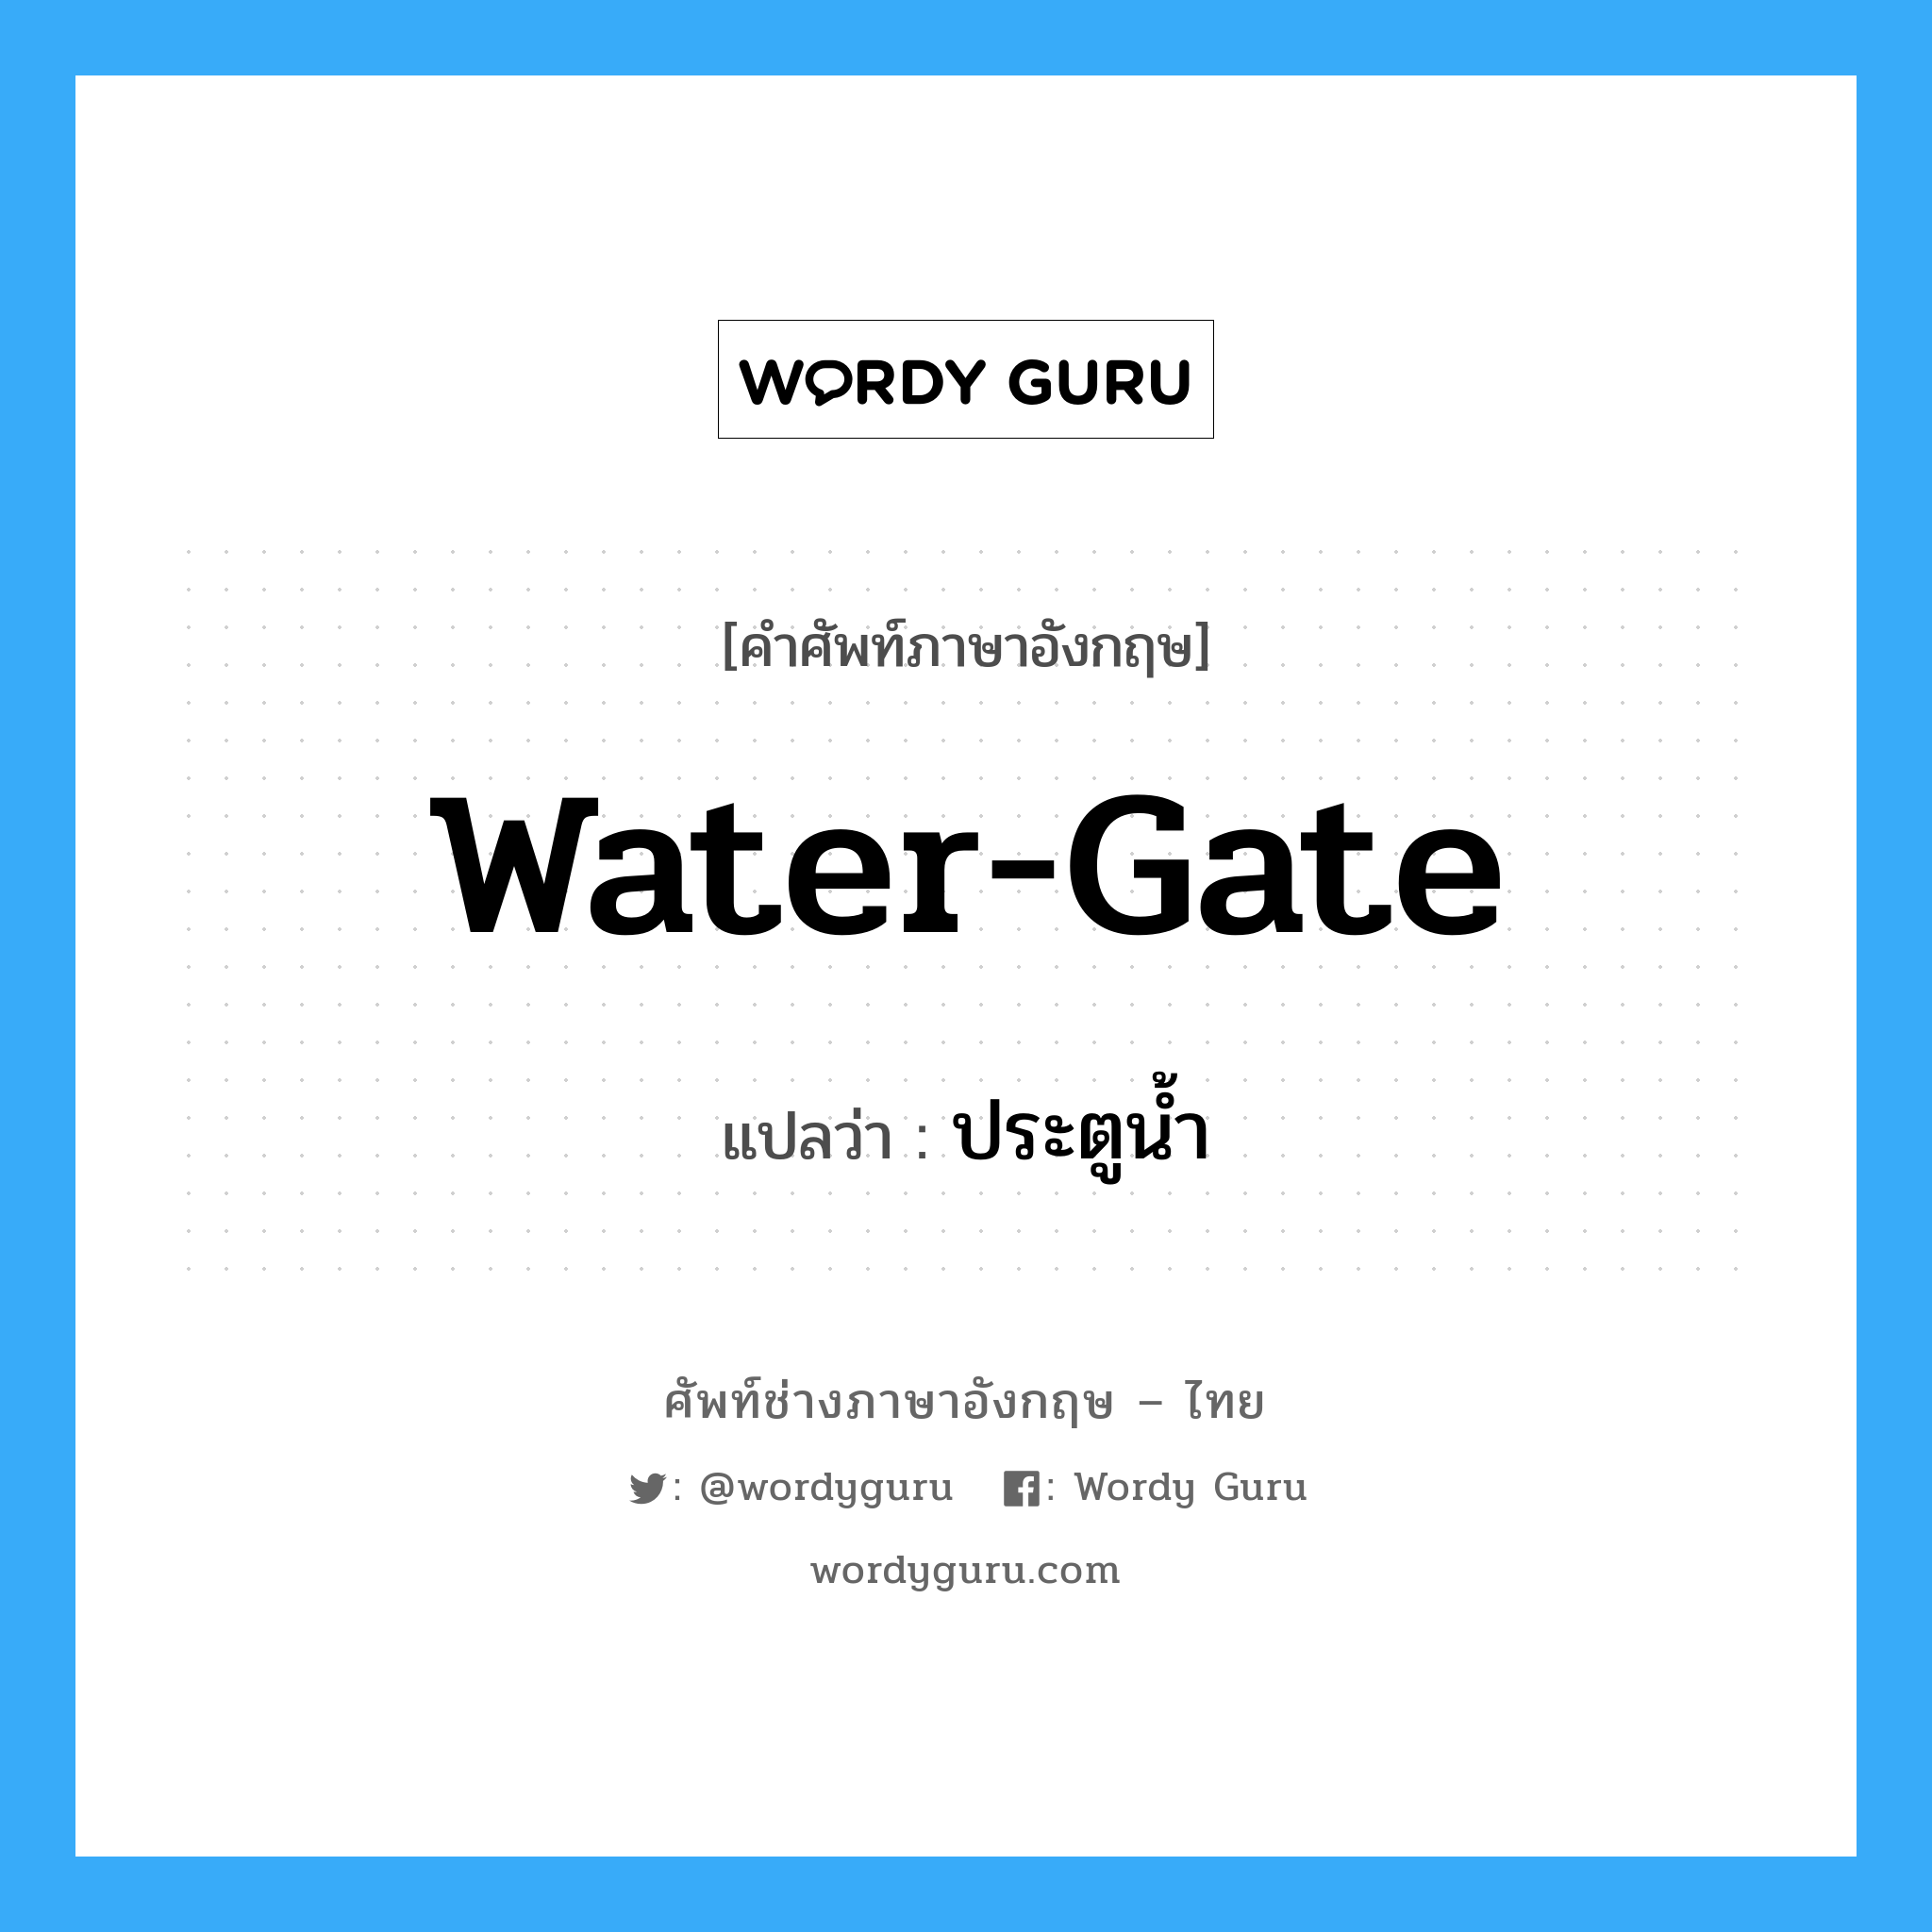 ประตูน้ำ ภาษาอังกฤษ?, คำศัพท์ช่างภาษาอังกฤษ - ไทย ประตูน้ำ คำศัพท์ภาษาอังกฤษ ประตูน้ำ แปลว่า water-gate